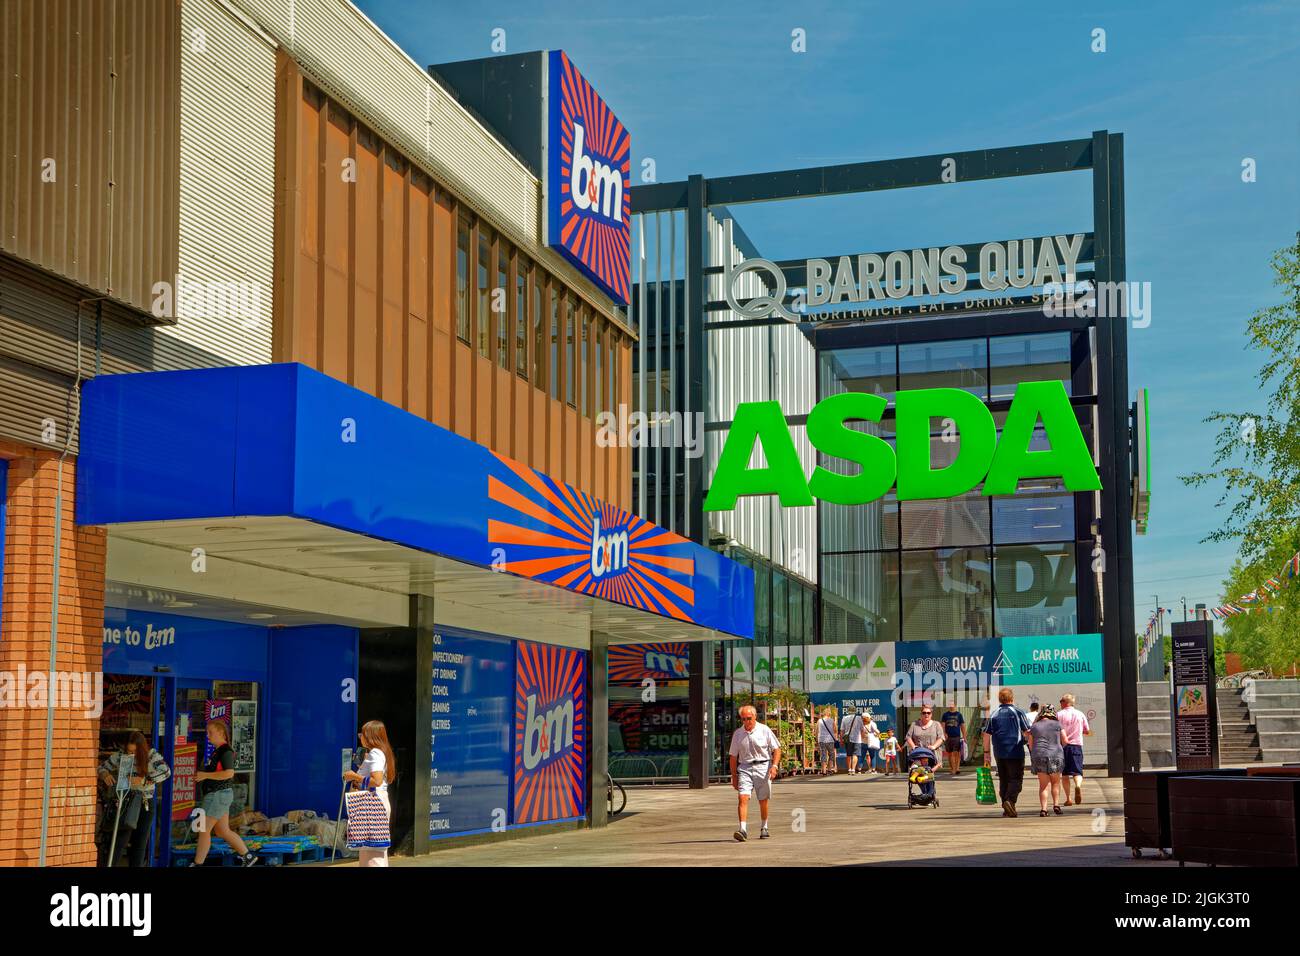 Les magasins Asda et B&M du nouveau centre de Barons Quay dans le centre-ville de Northwich, Cheshire, Angleterre, Royaume-Uni. B&M a remplacé M&S en 2021. Banque D'Images